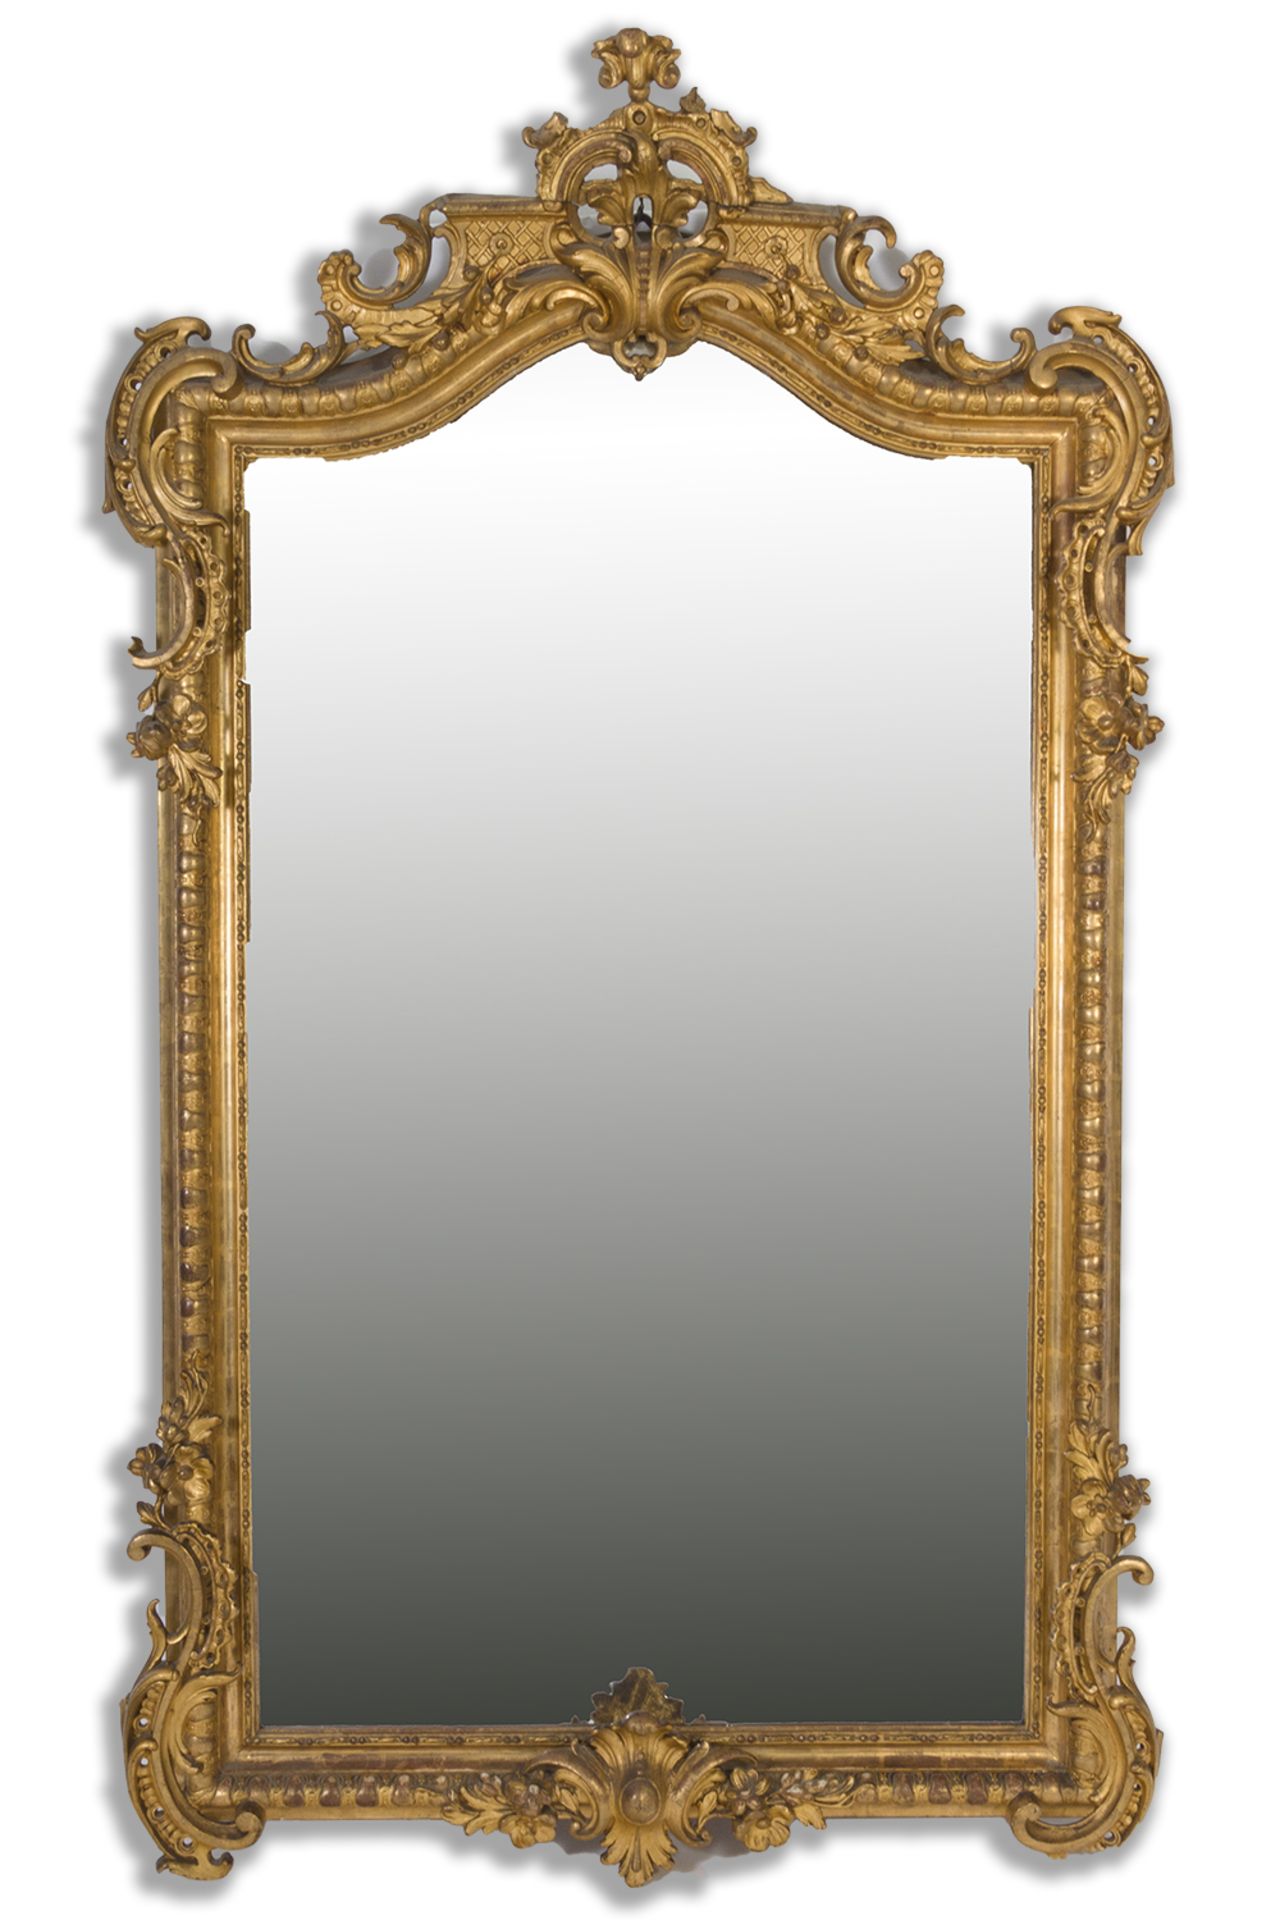 Gran espejo Napoleón III. Francia, hacia 1870.